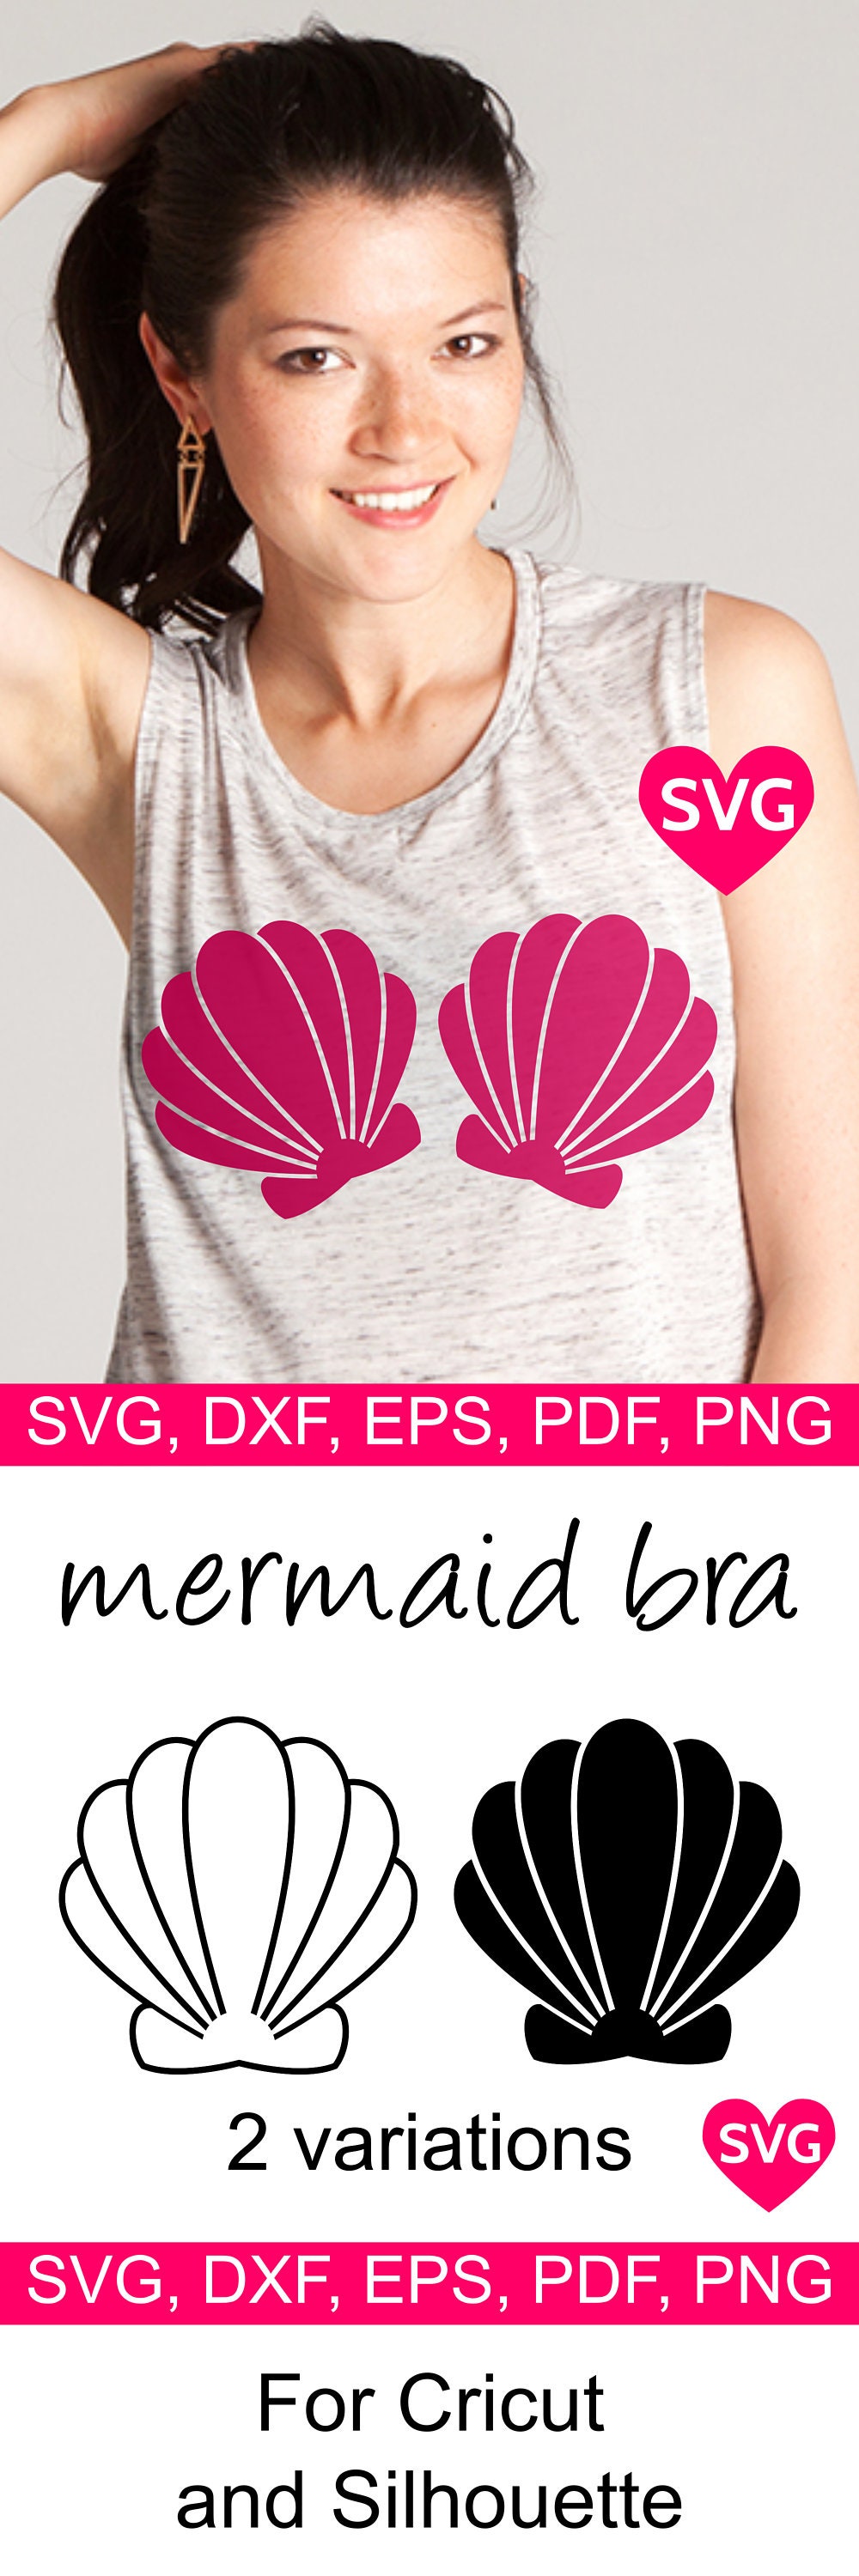 Free Free 126 Mermaid Seashell Bra Svg SVG PNG EPS DXF File